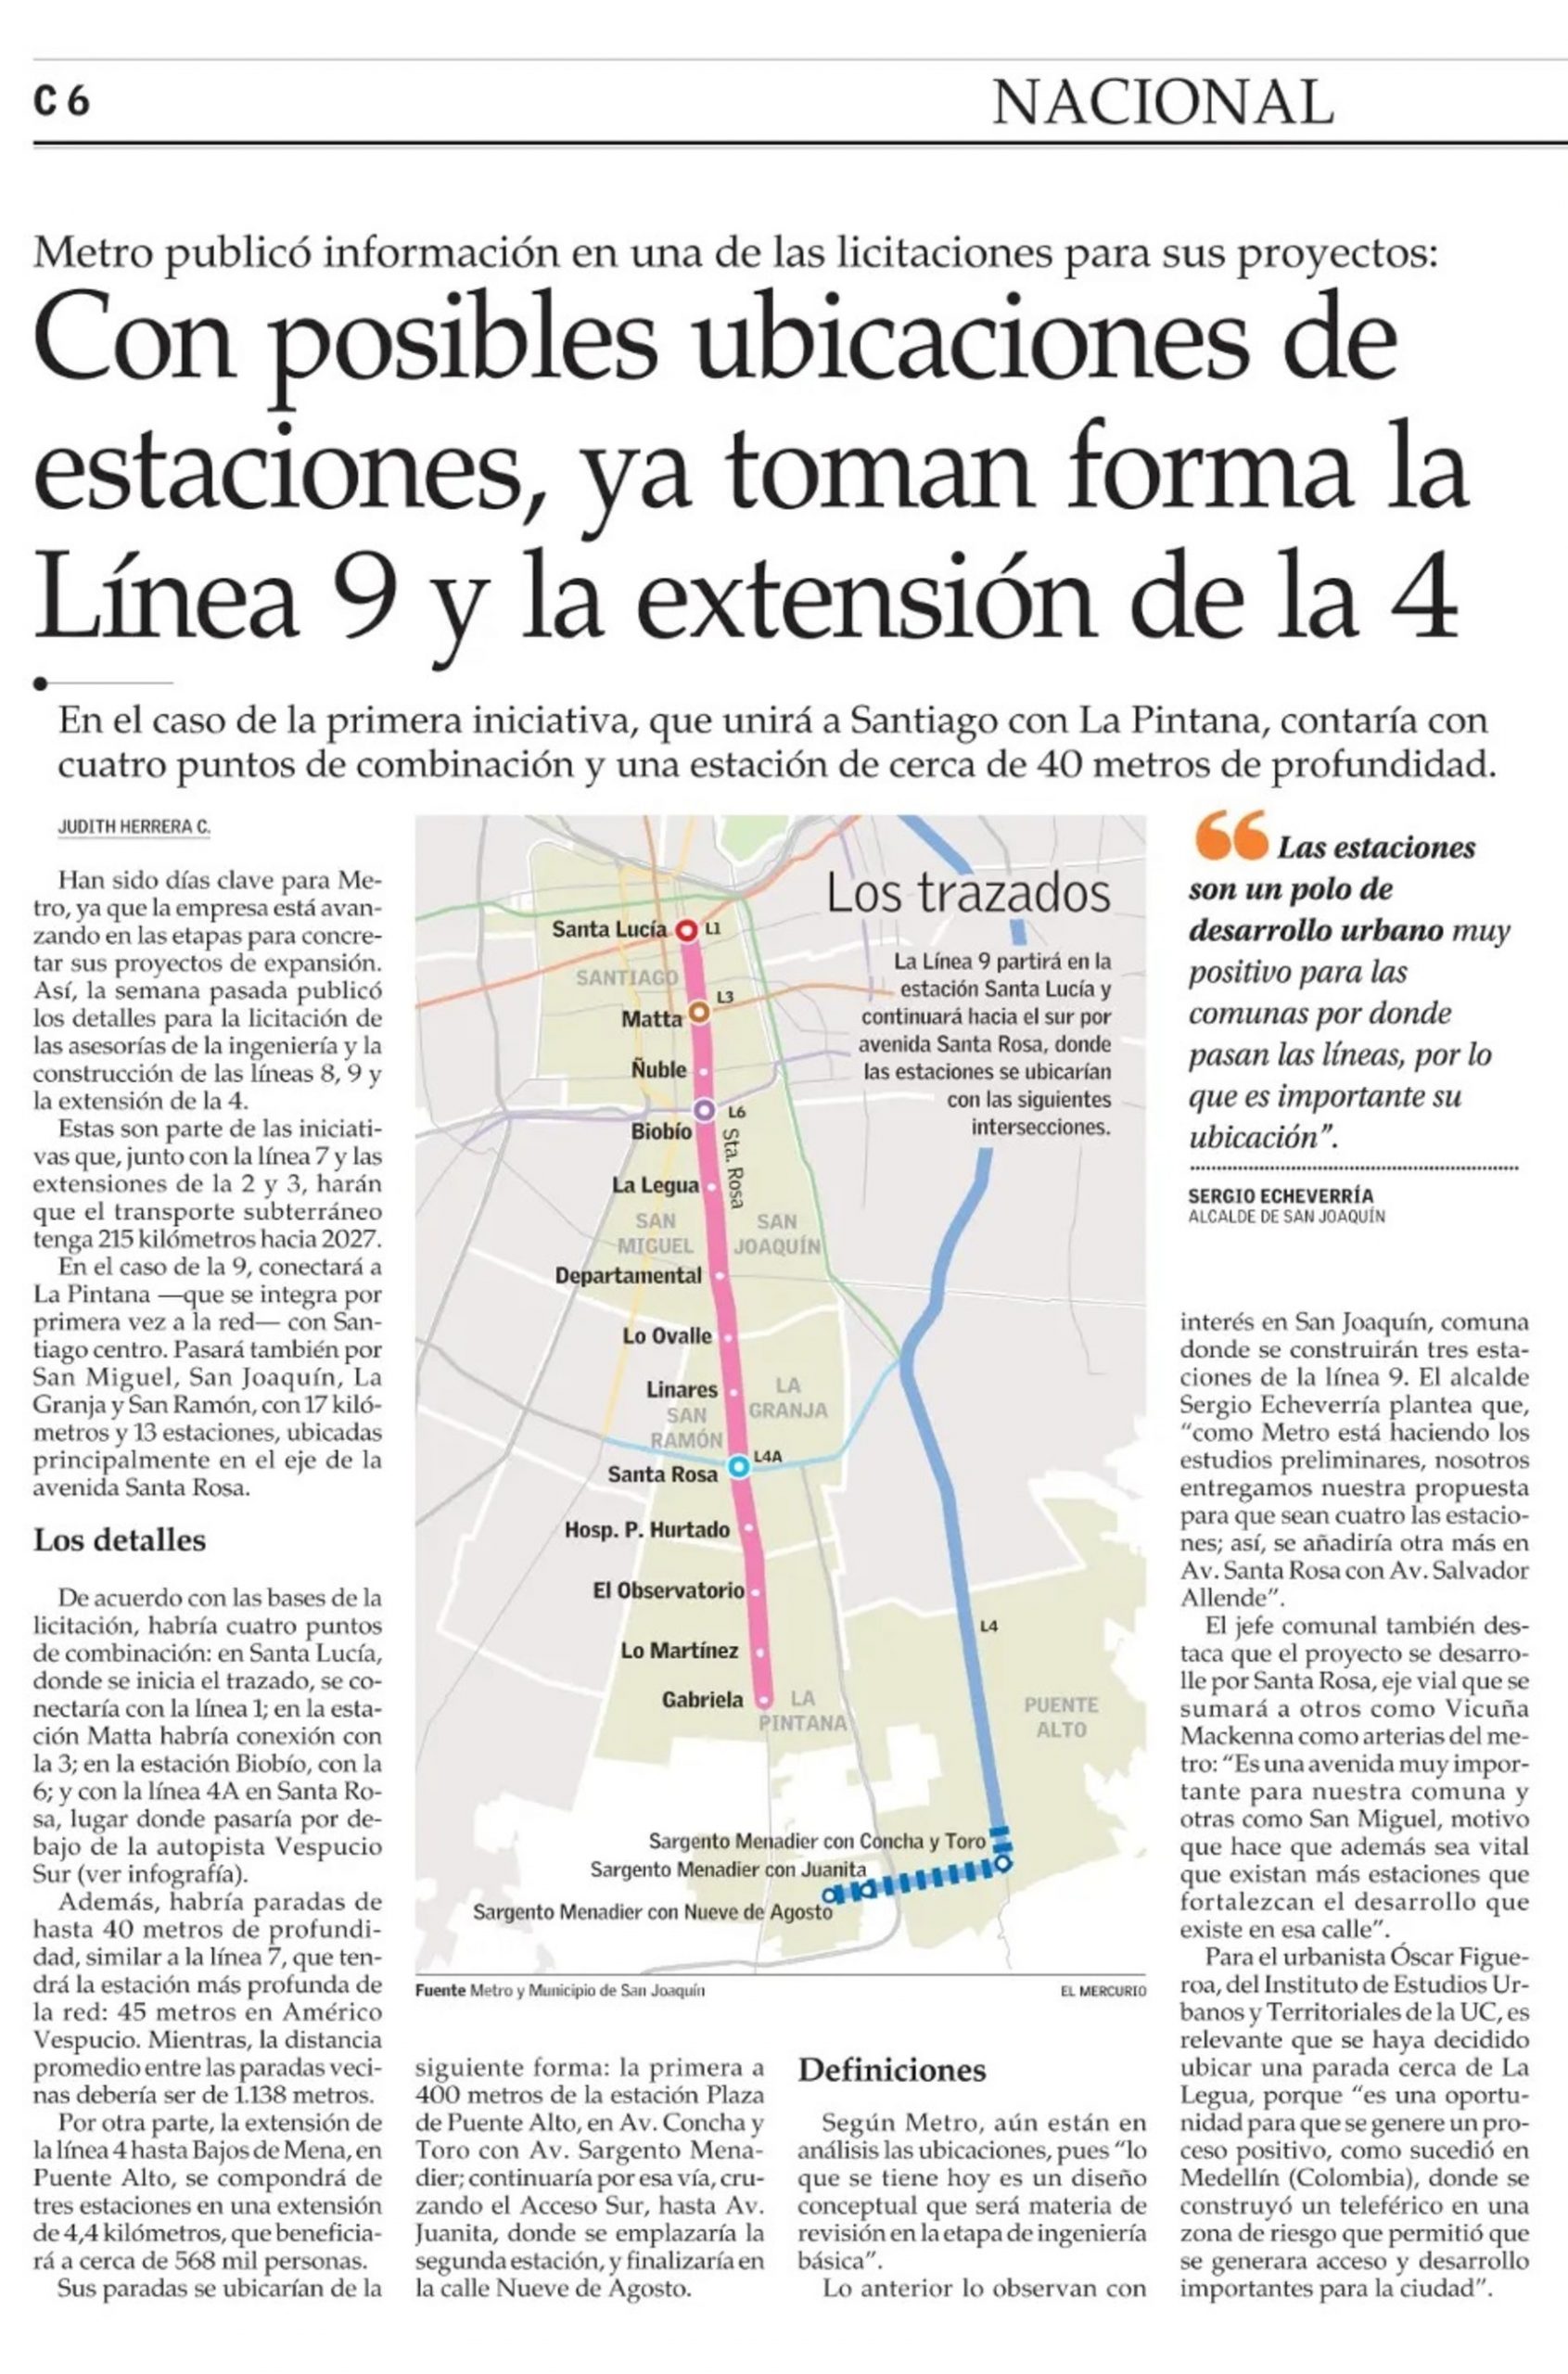 Con posibles ubicaciones de estaciones, ya toman forma la Línea 9 y la extensión de la 4